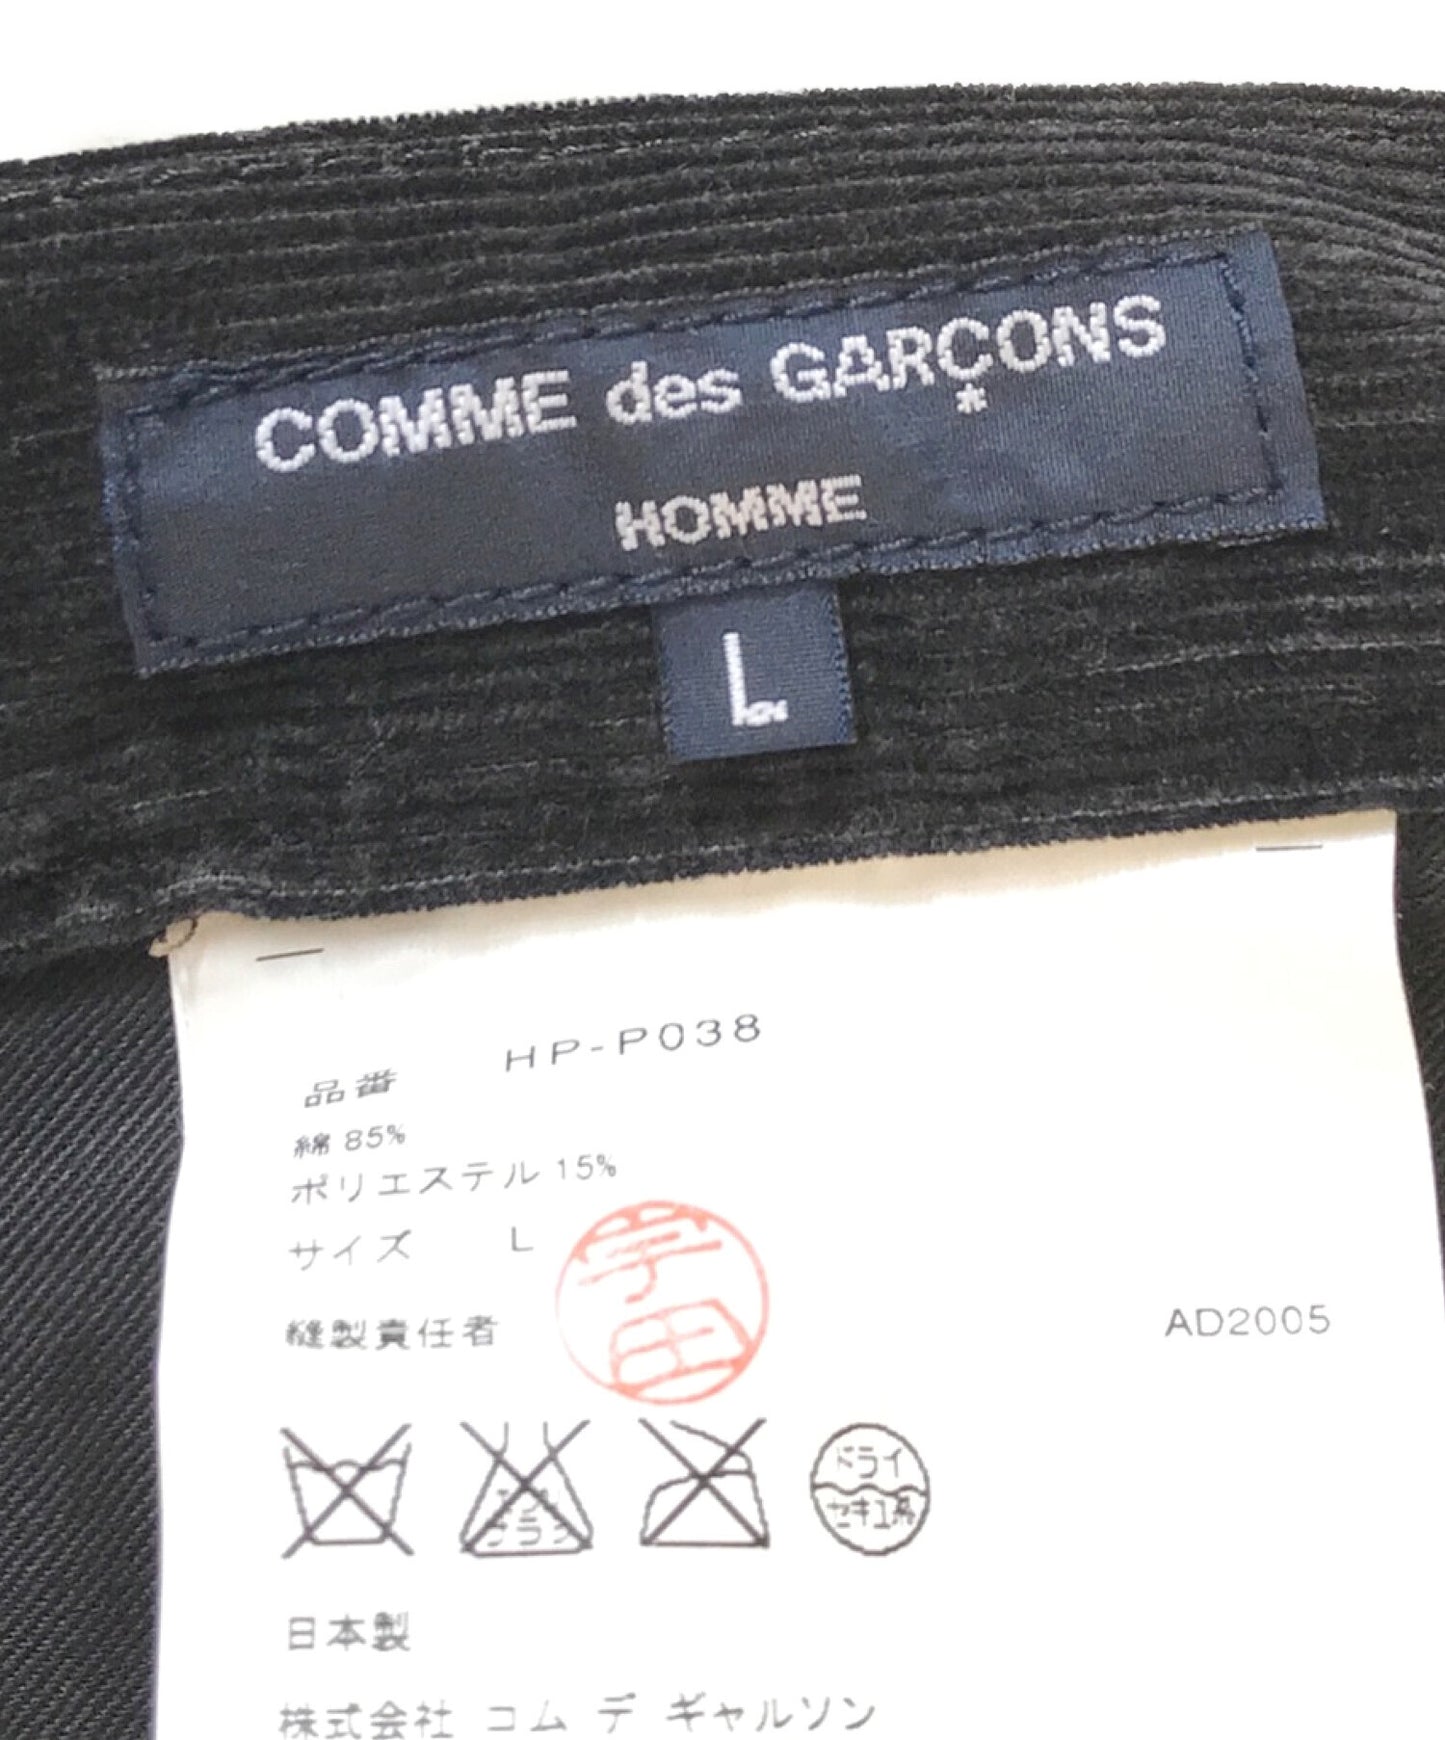 [Pre-owned] COMME des GARCONS HOMME corduroy bush pants